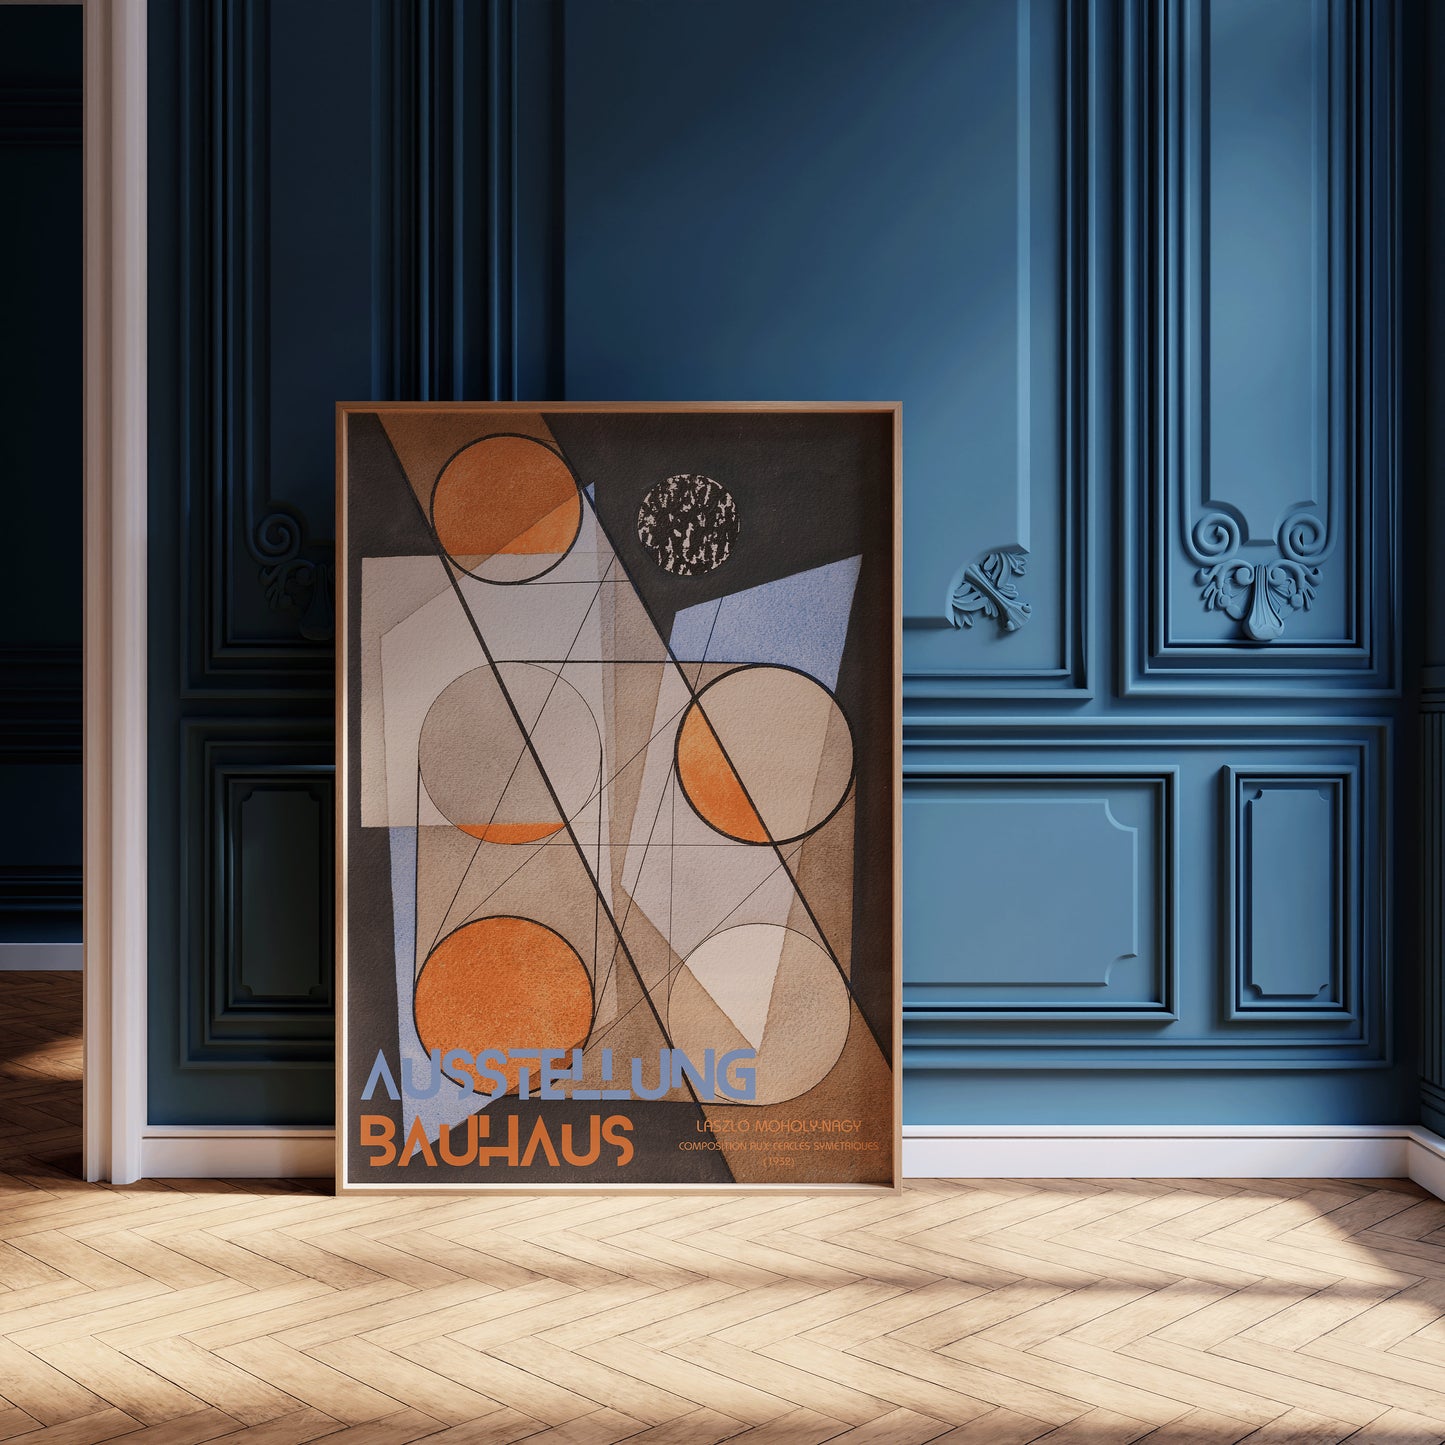 Vintage Bauhaus Exhibition Poster | László Moholy-Nagy - Composition aux cercles symétriques (1932) (available framed or unframed)